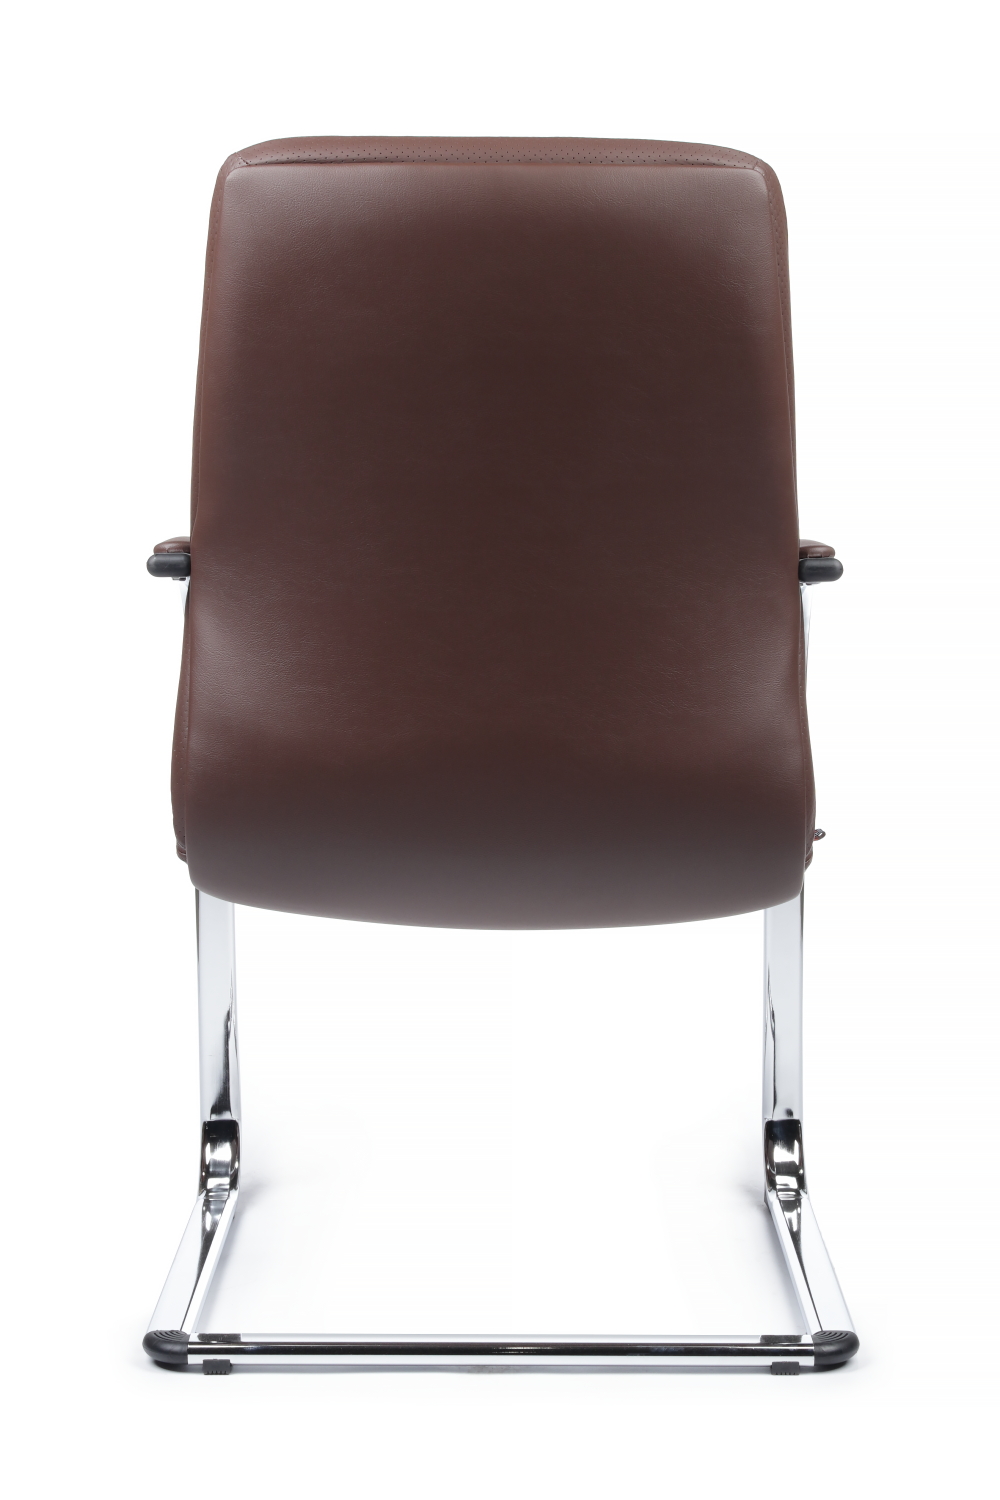 Конференц кресло RIVA DESIGN Pablo-CF C2216-1 натуральная кожа Коричневый